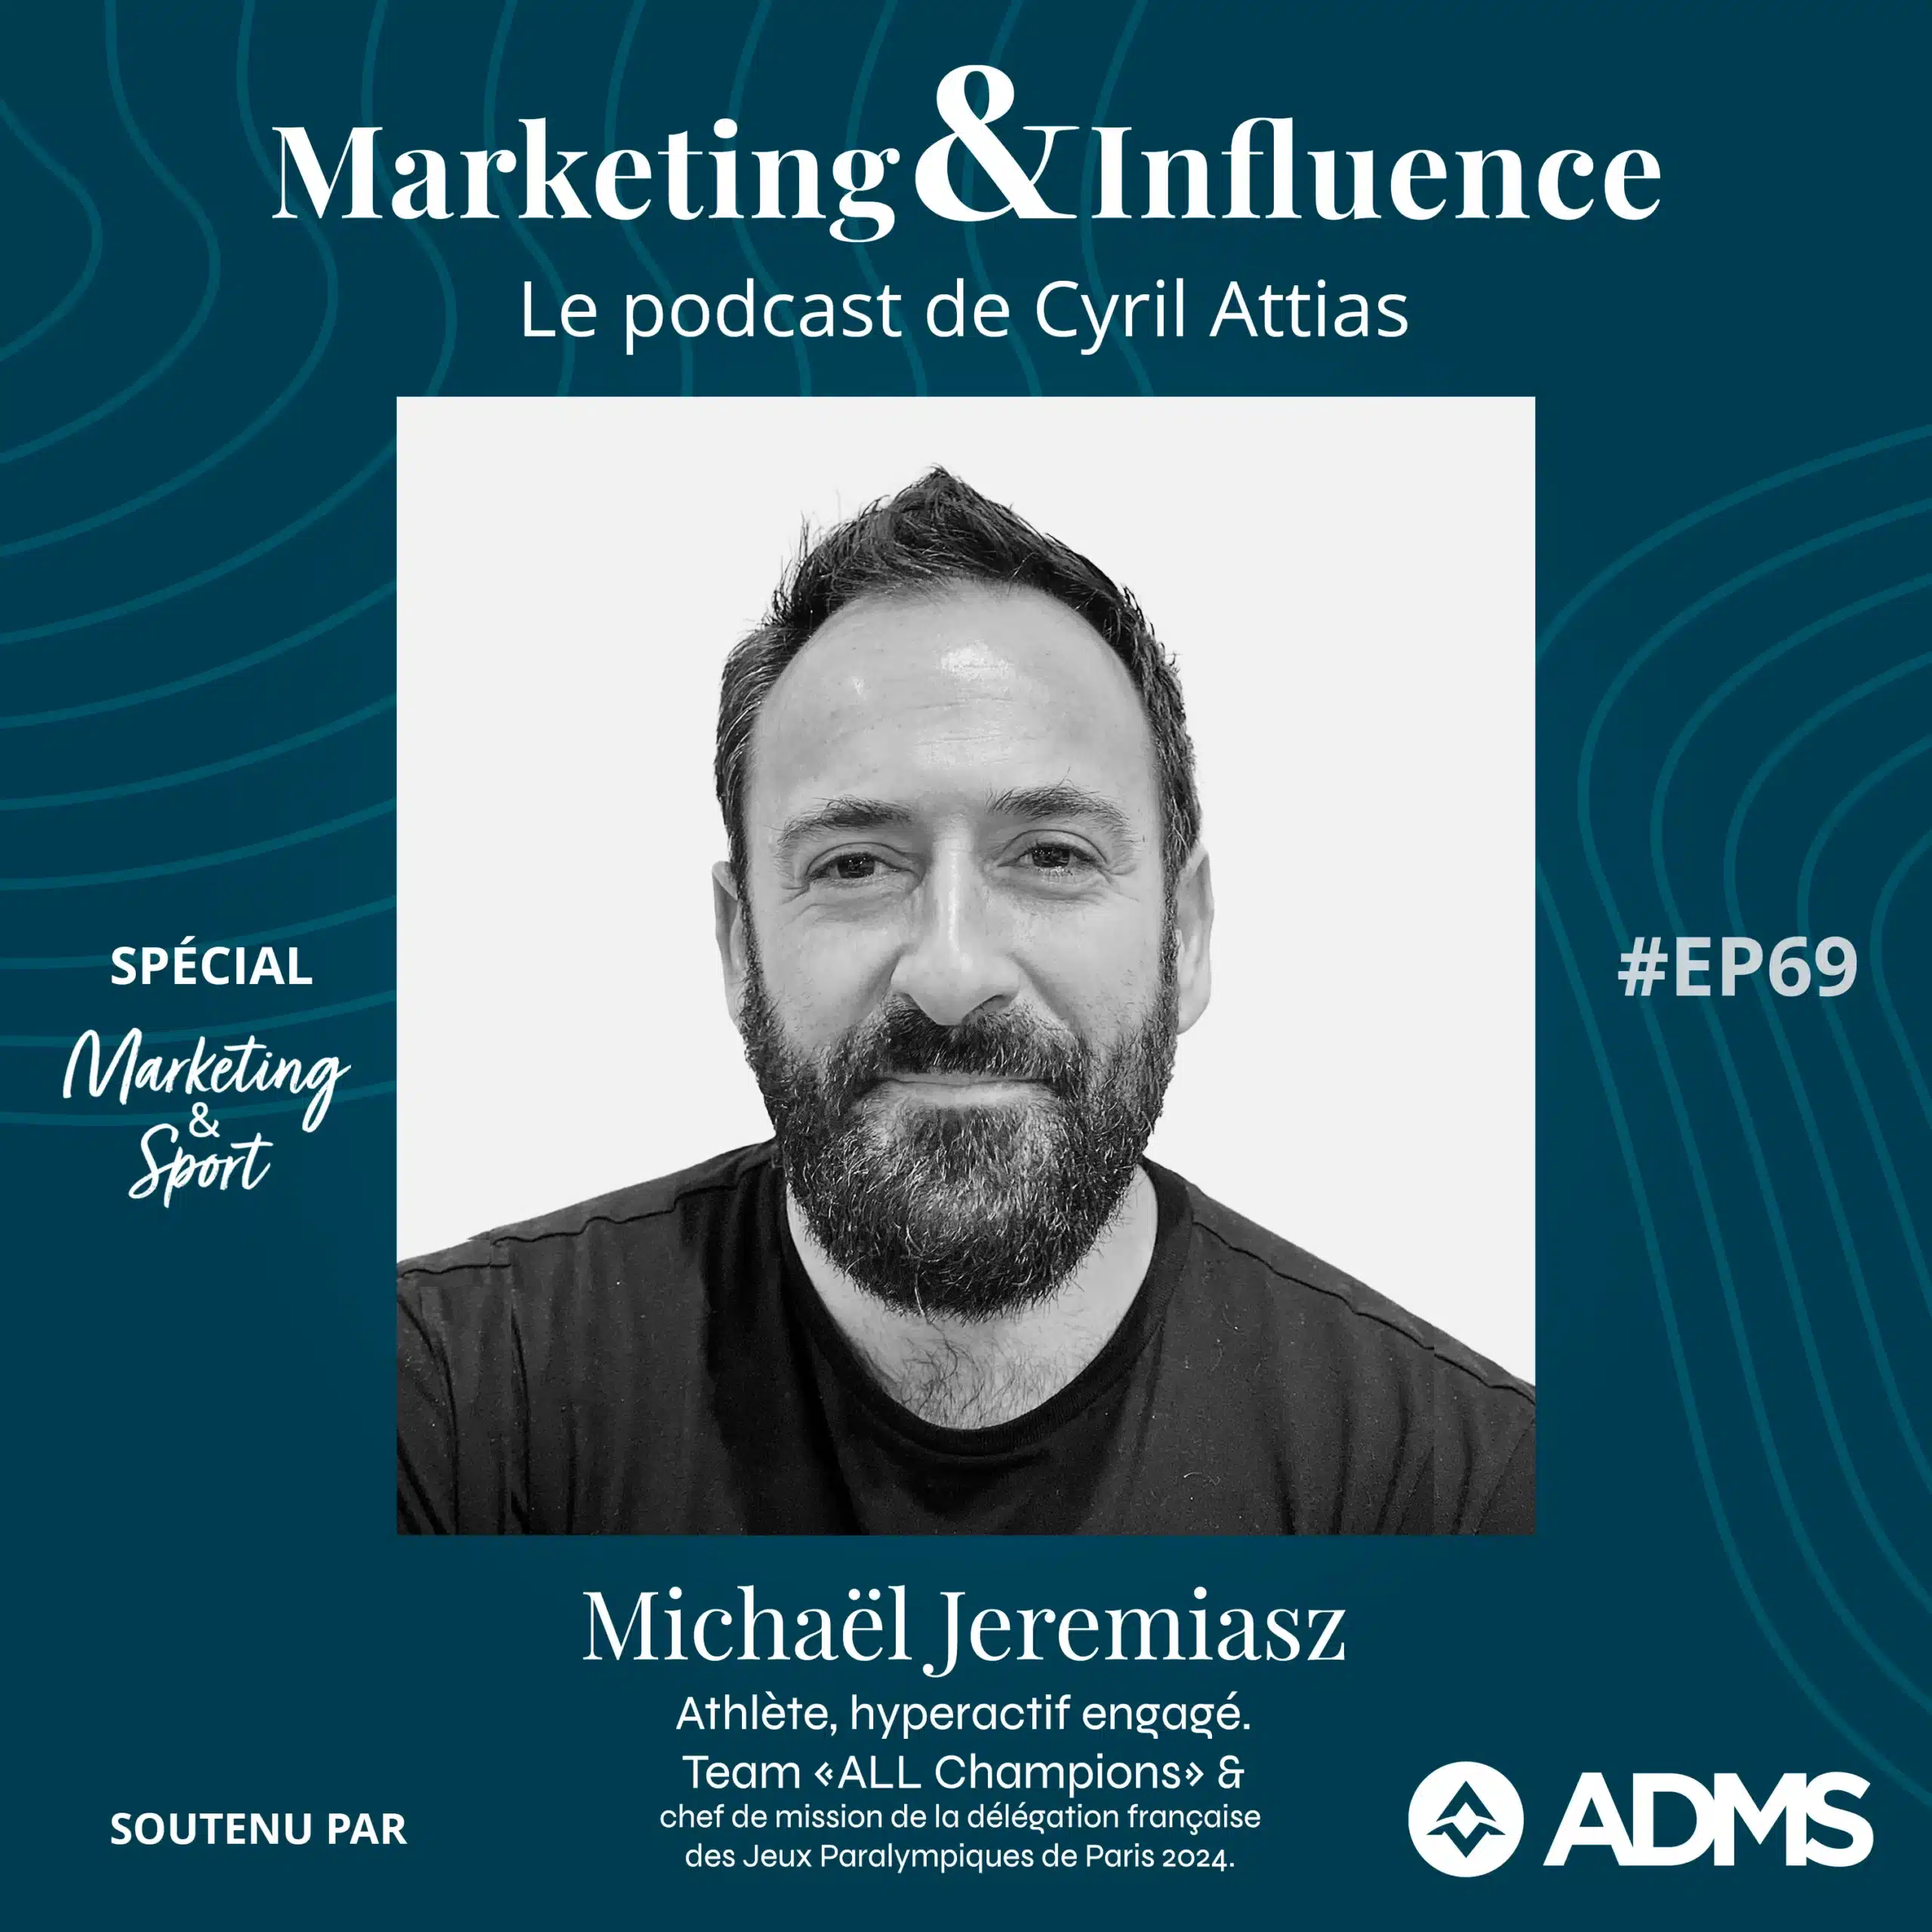 Michael-Jeremiasz-ACCOR-Familly-Podcast-Cyril-Attias-Marketing-Influence